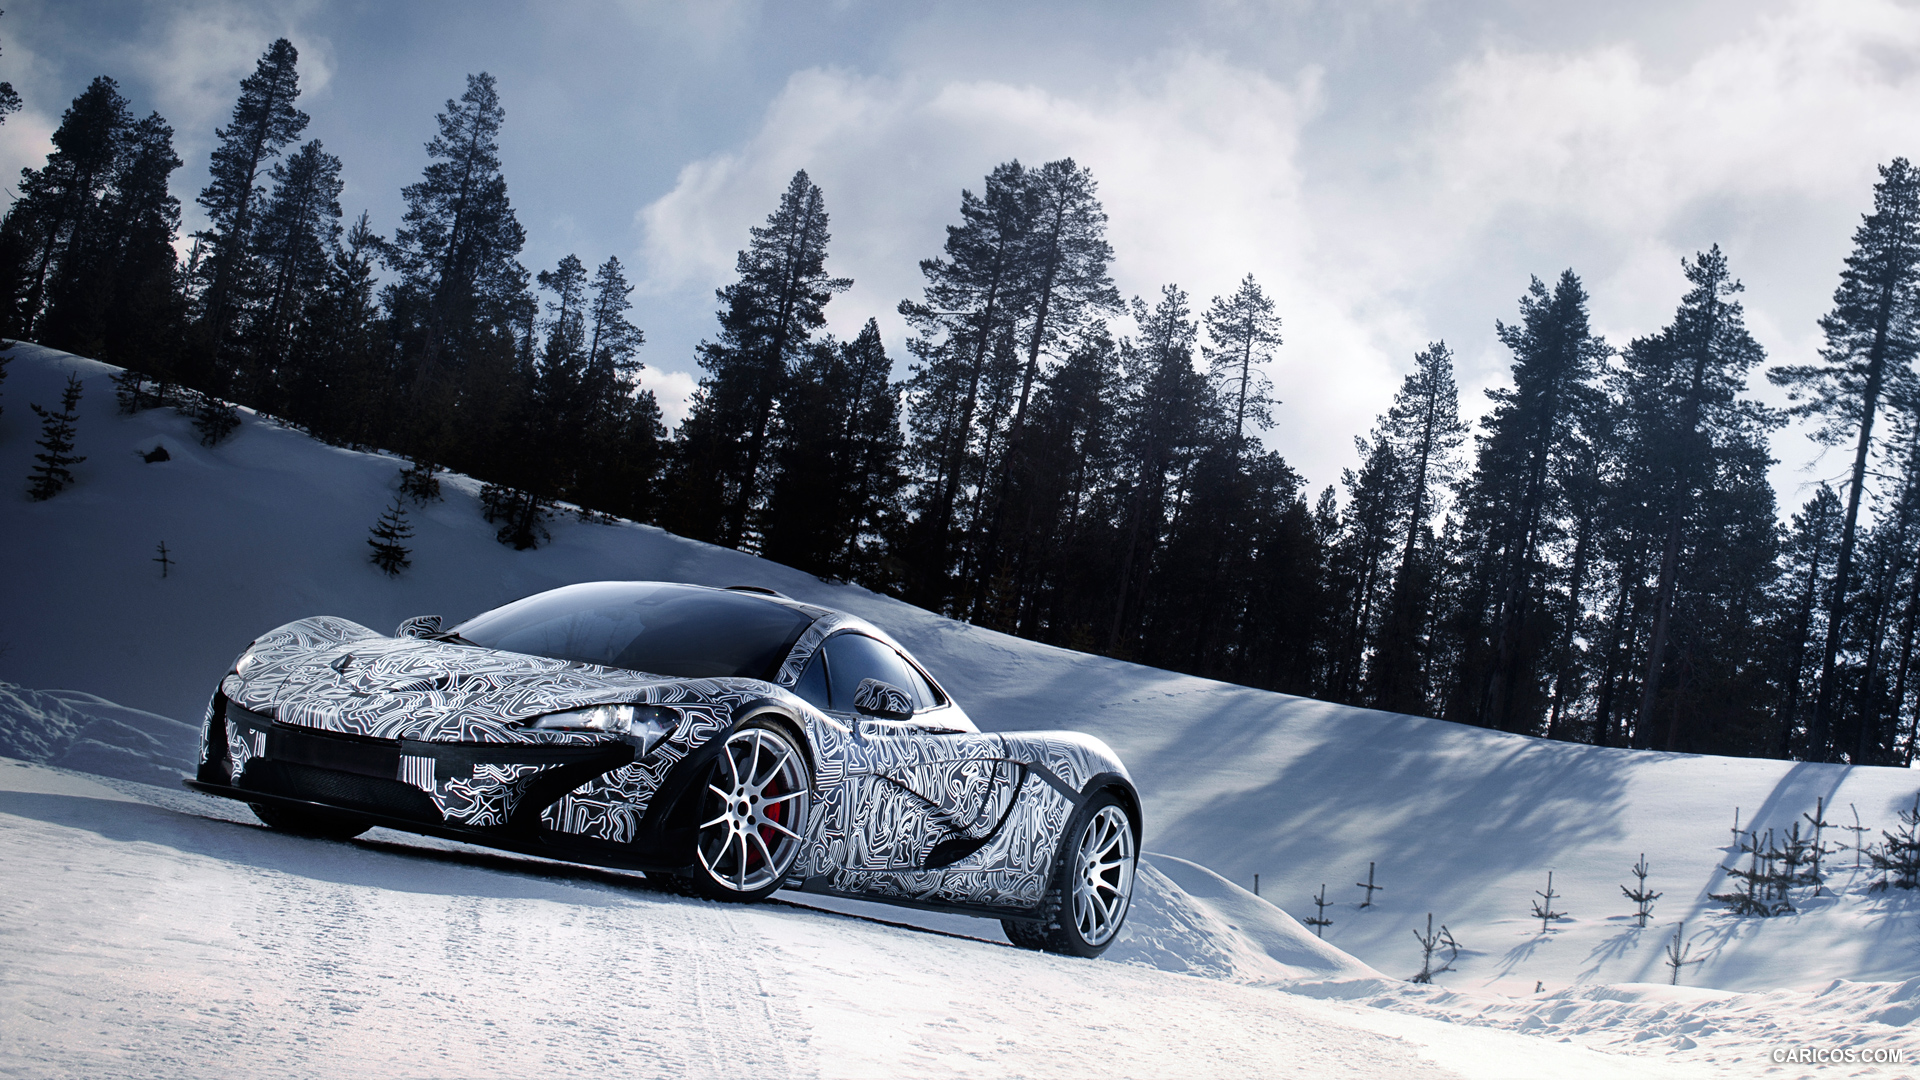 2014 McLaren P1 - In Snow - Front, #79 of 126